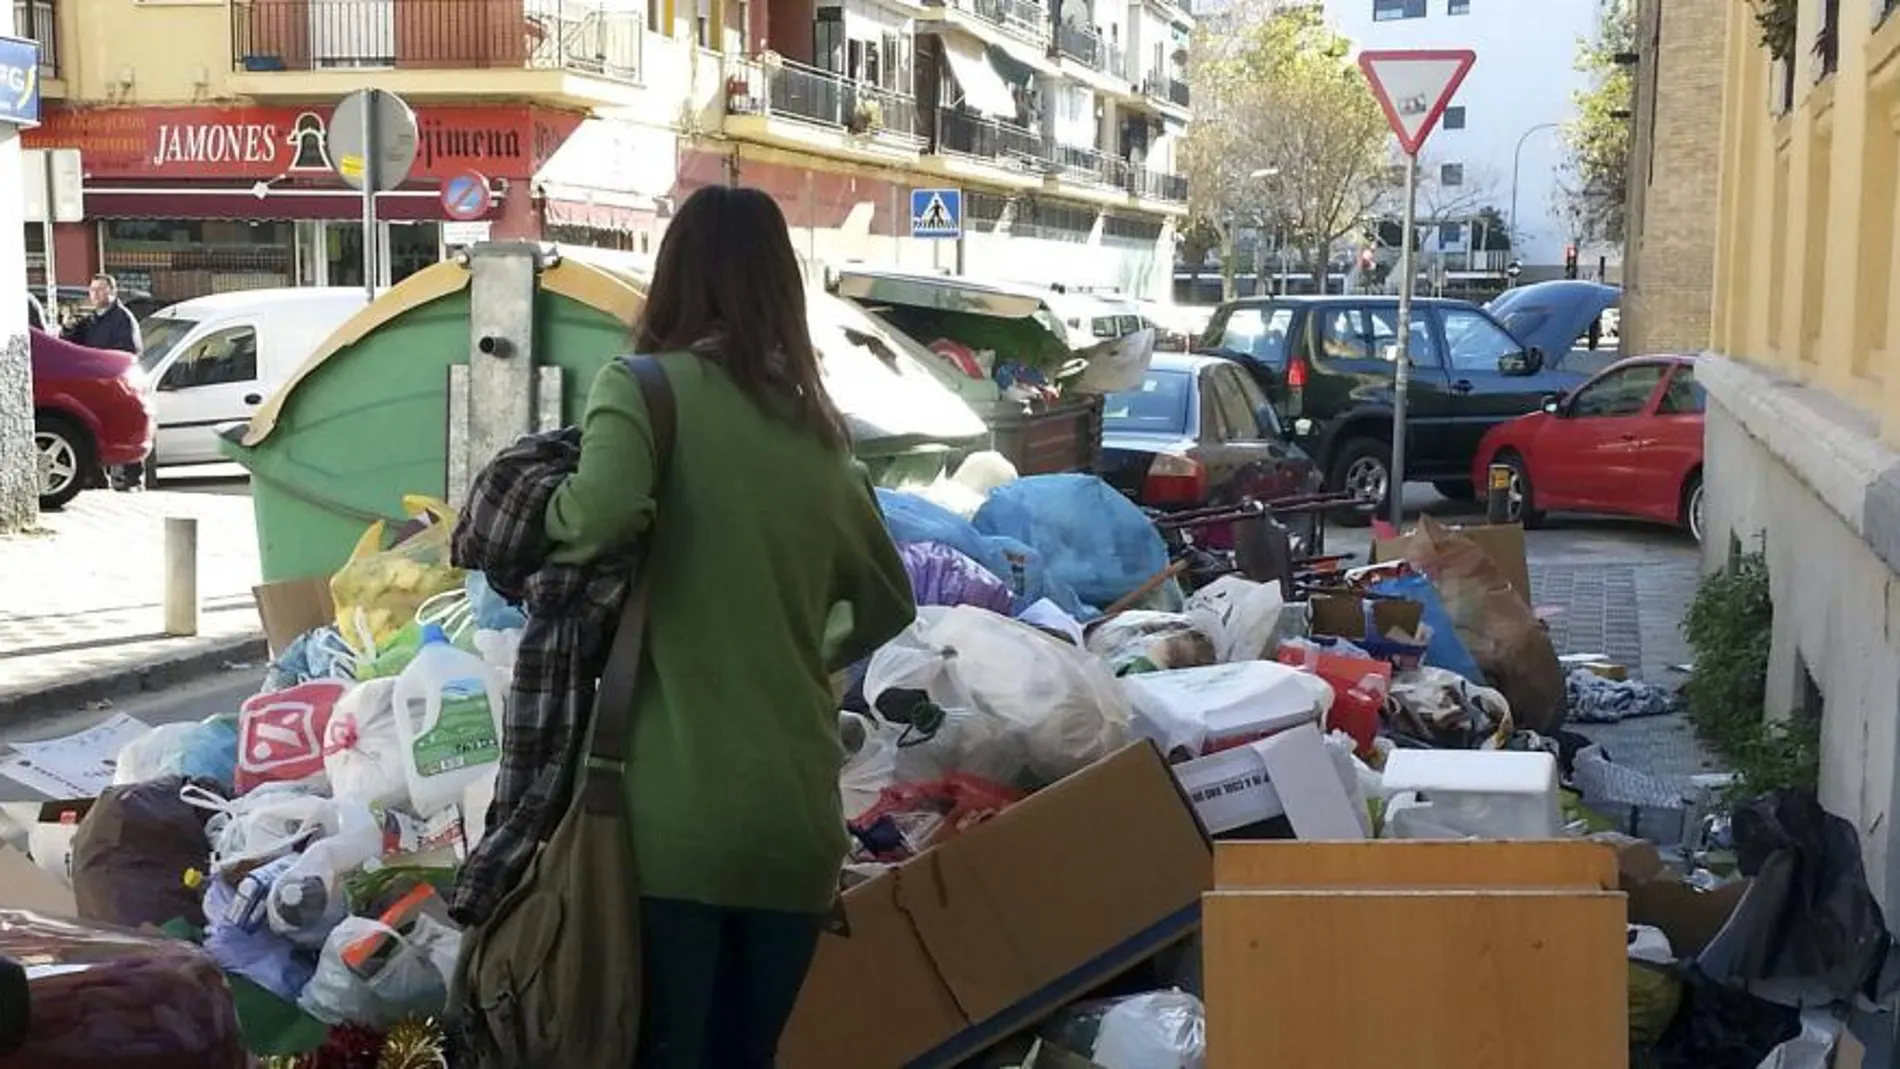 Basura acumulada en una calle de Sevilla